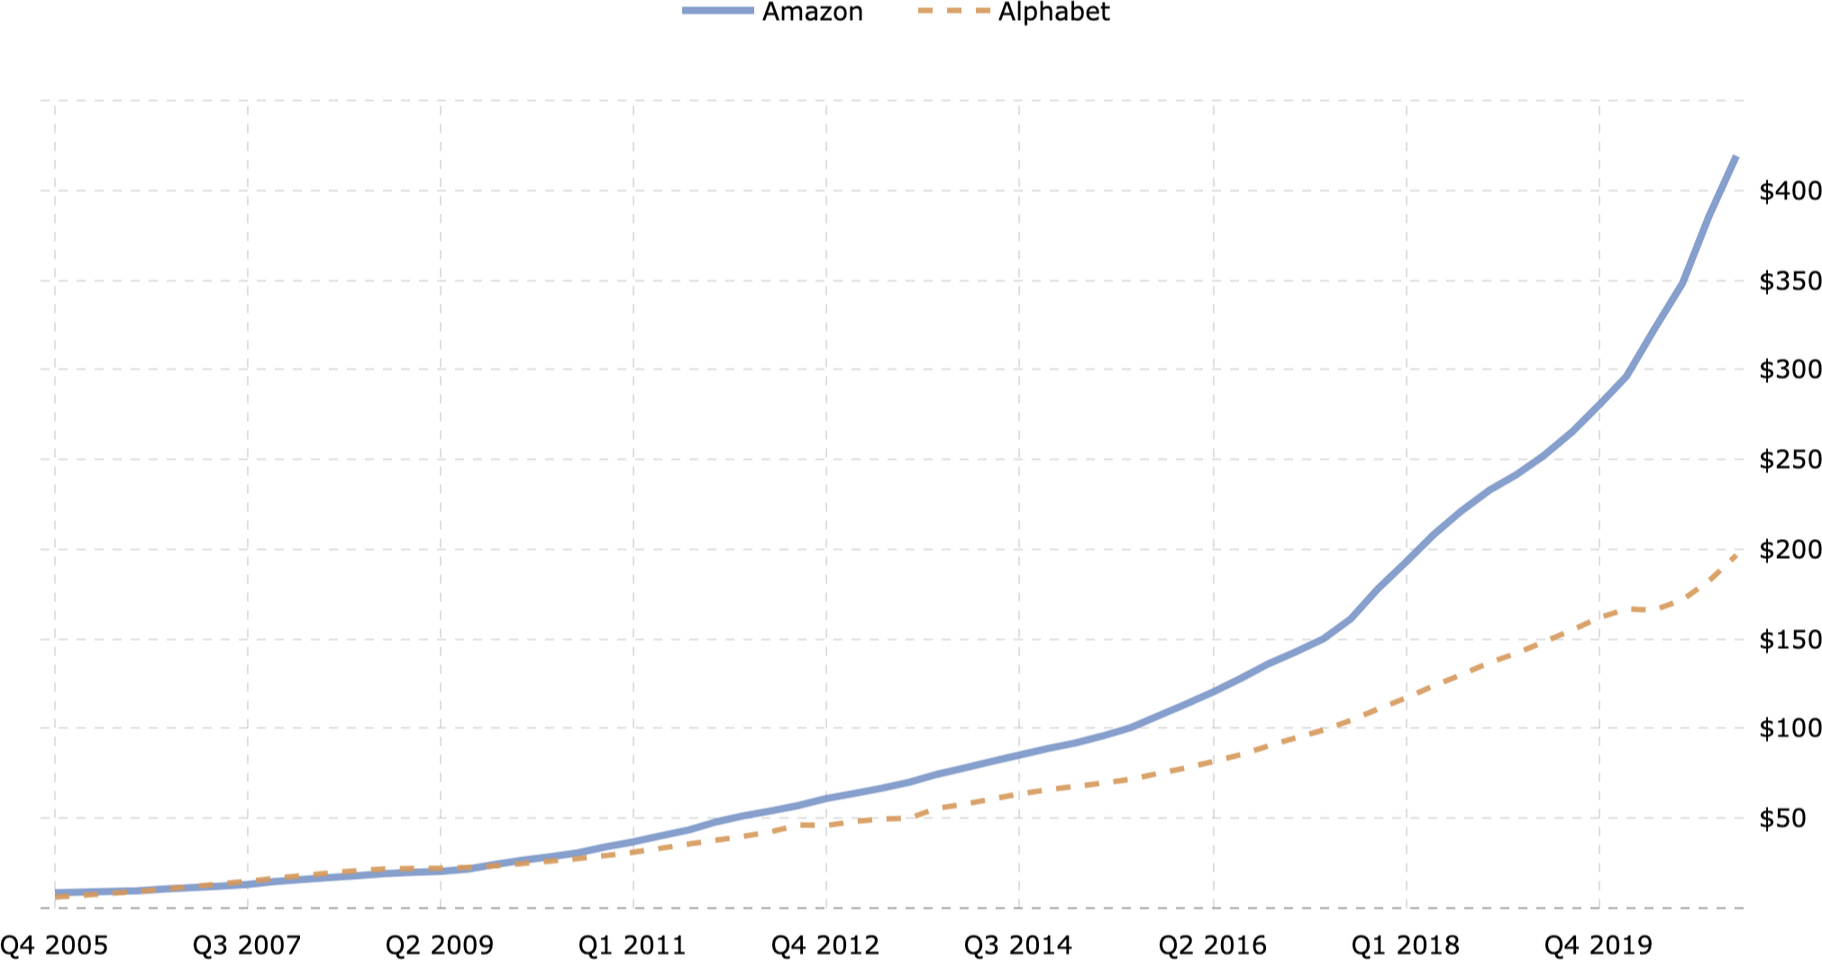 Сравнение выручки Amazon и Google в млрд долларов. Источник: Macrotrends